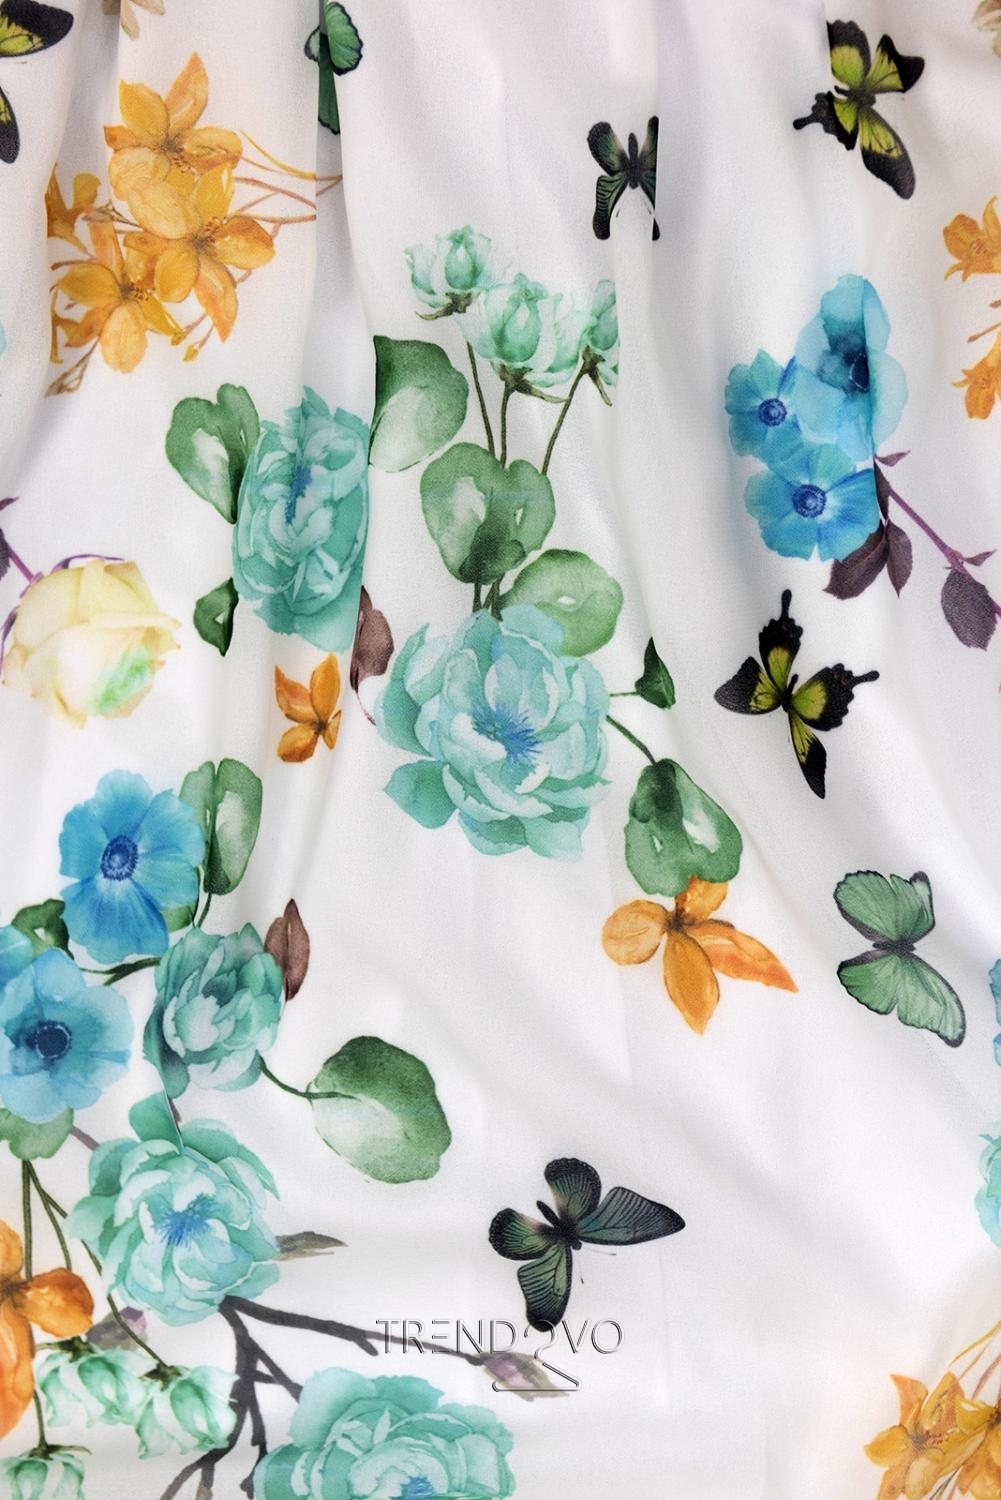 Maxi šaty s motivem květin a motýlů